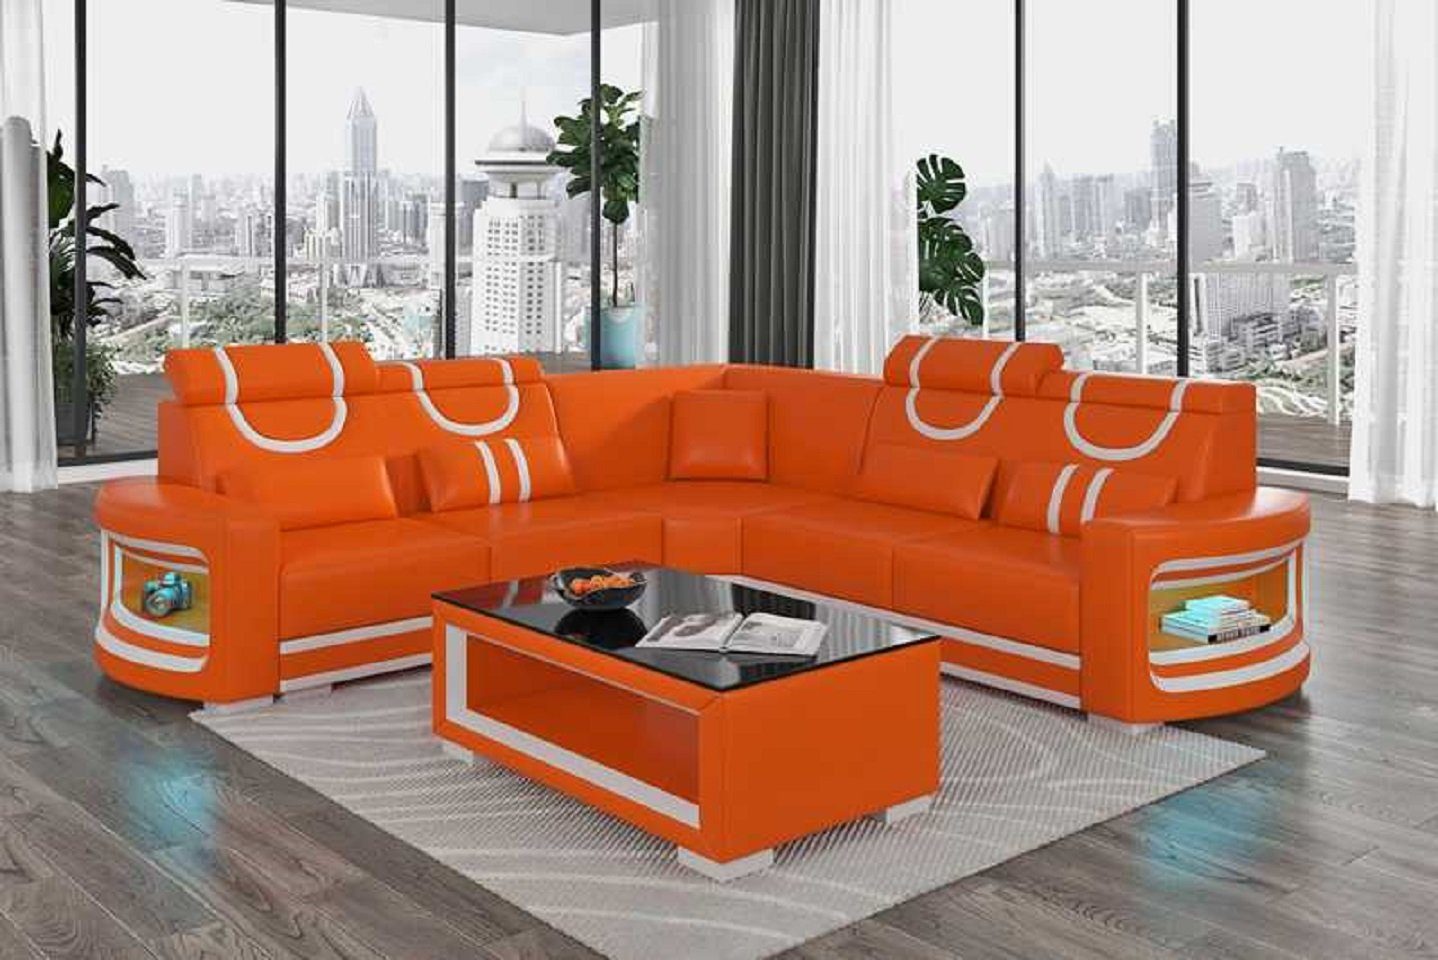 JVmoebel Ecksofa Modern Ecksofa Luxus L Form Couch Sofa Wohnzimmer Design Neu, 3 Teile, Made in Europe Orange